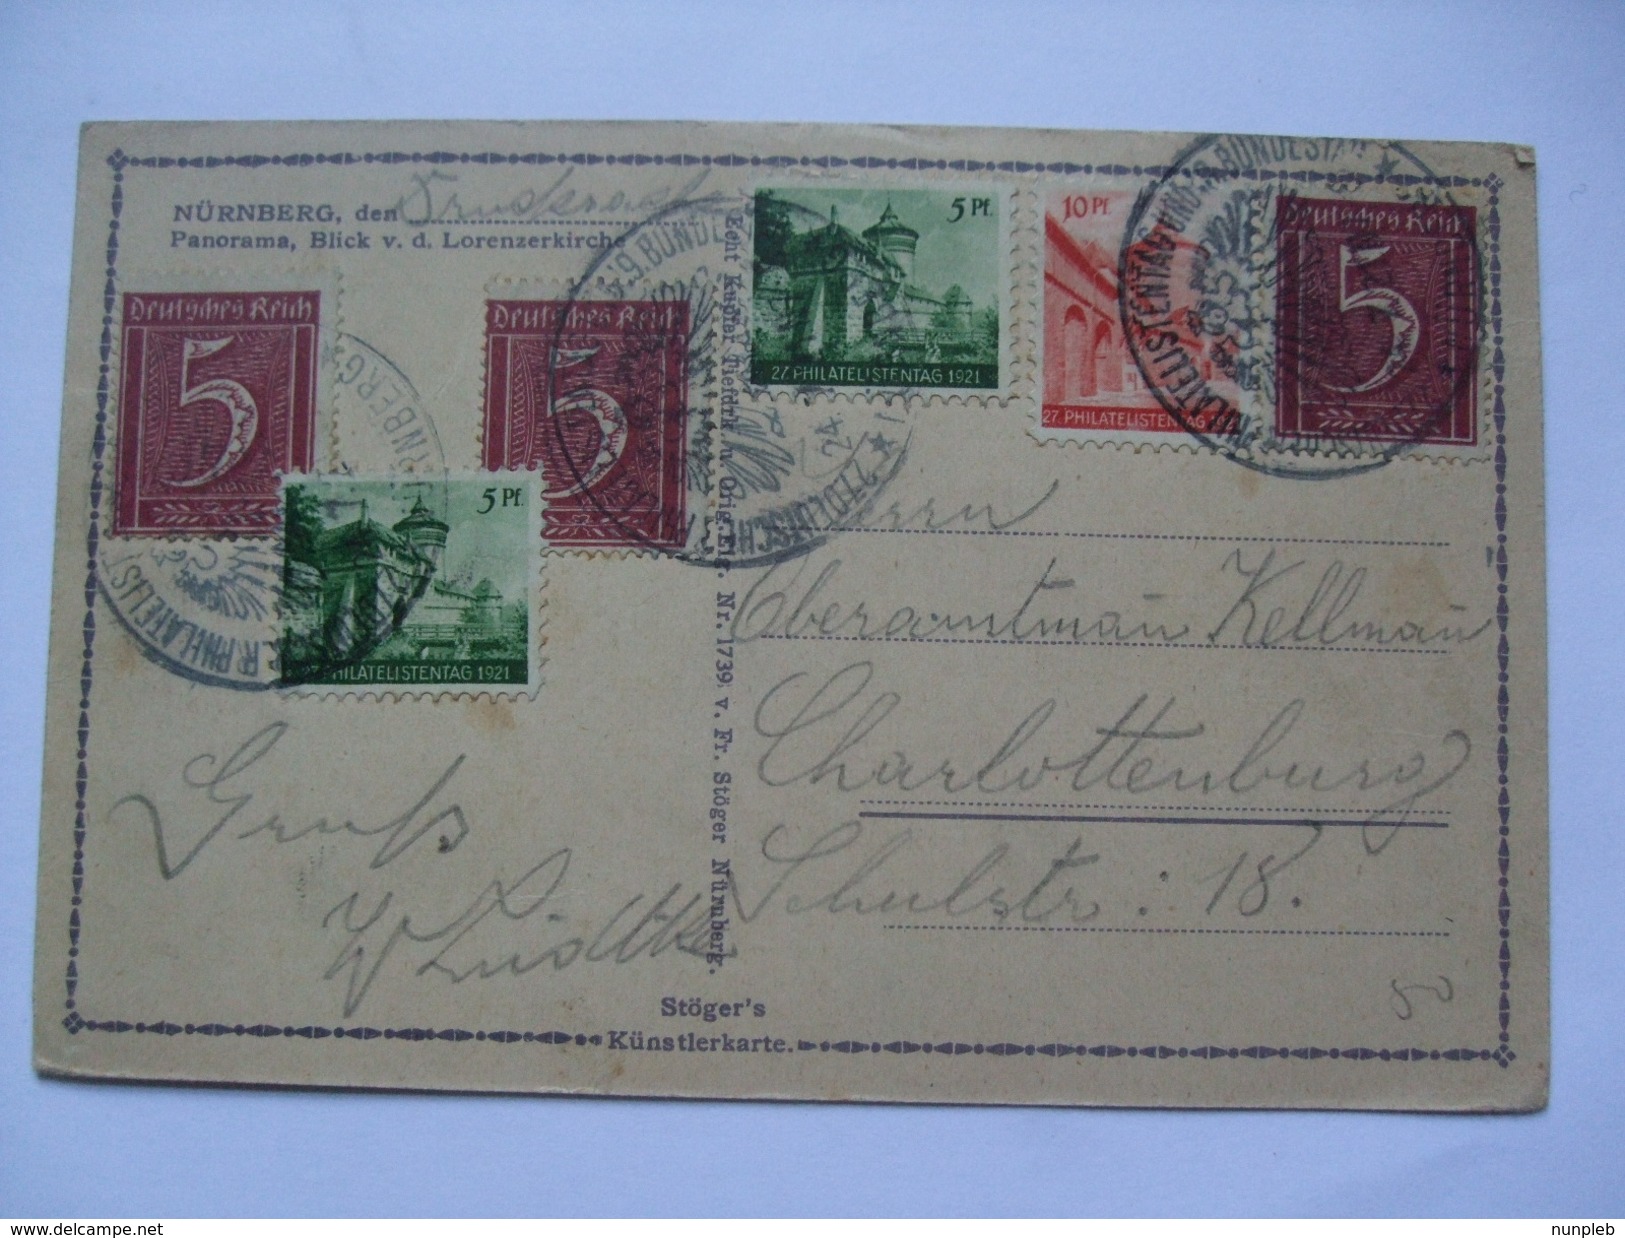 GERMANY 1921 - Postcard - Mit Philatelistentag 1921 Briefmarke Und Sonderstempel - Briefe U. Dokumente